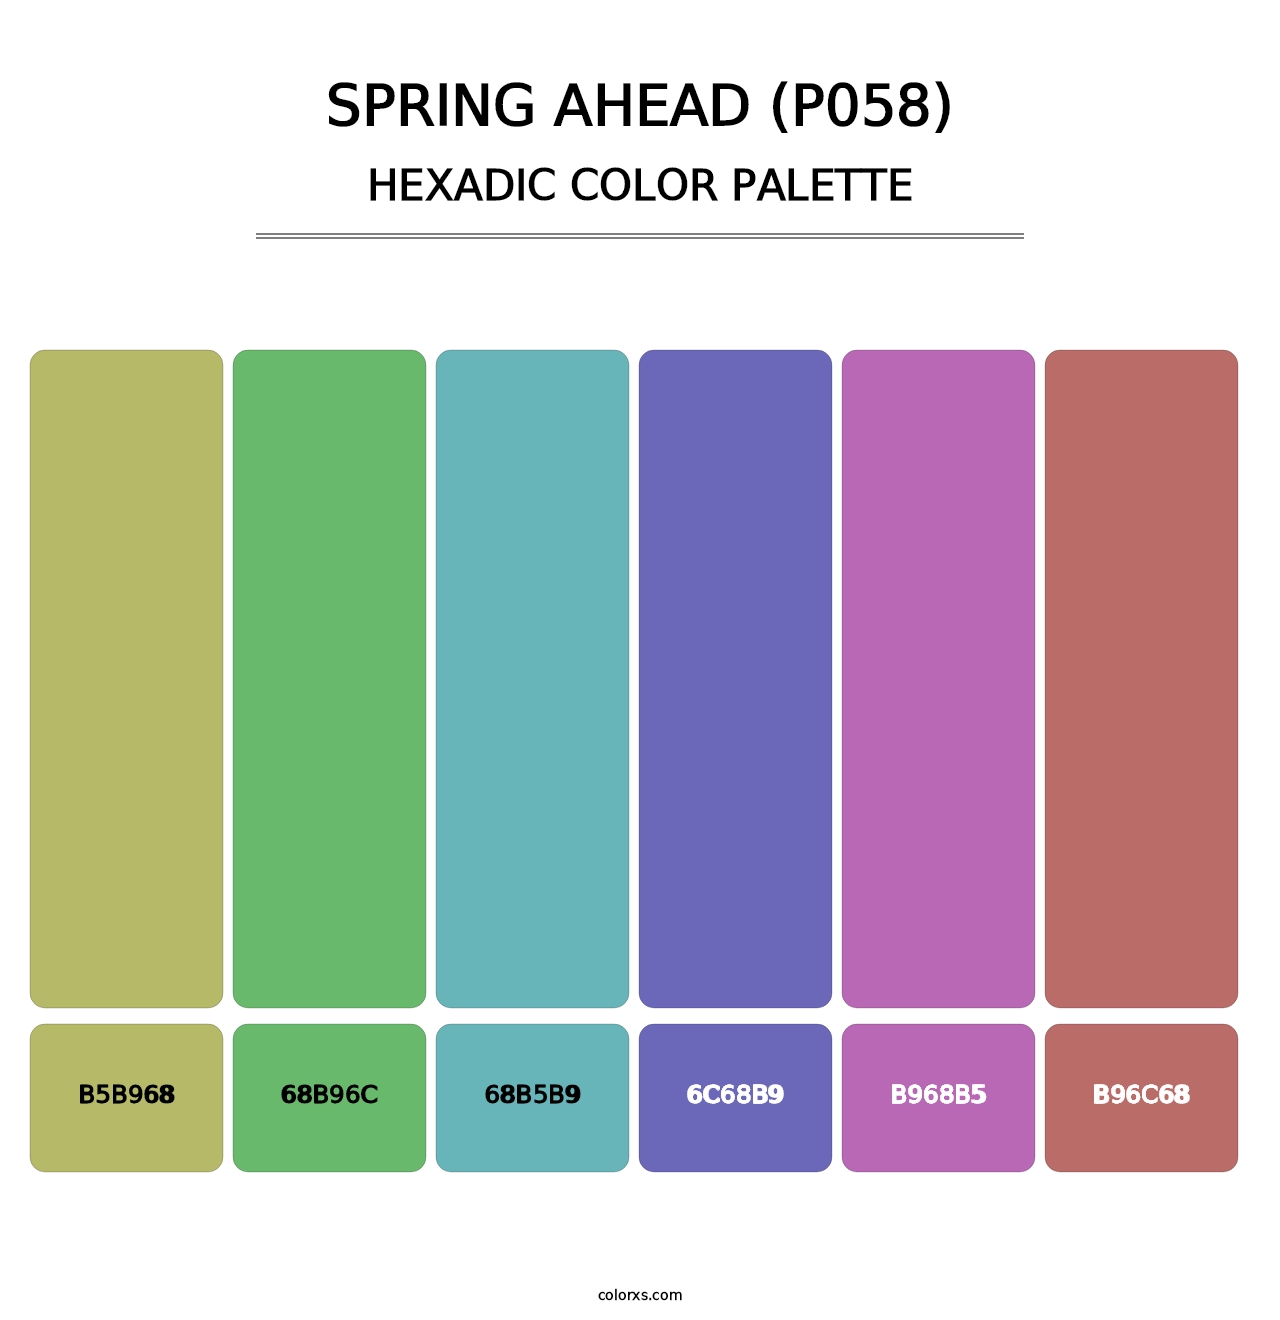 Spring Ahead (P058) - Hexadic Color Palette